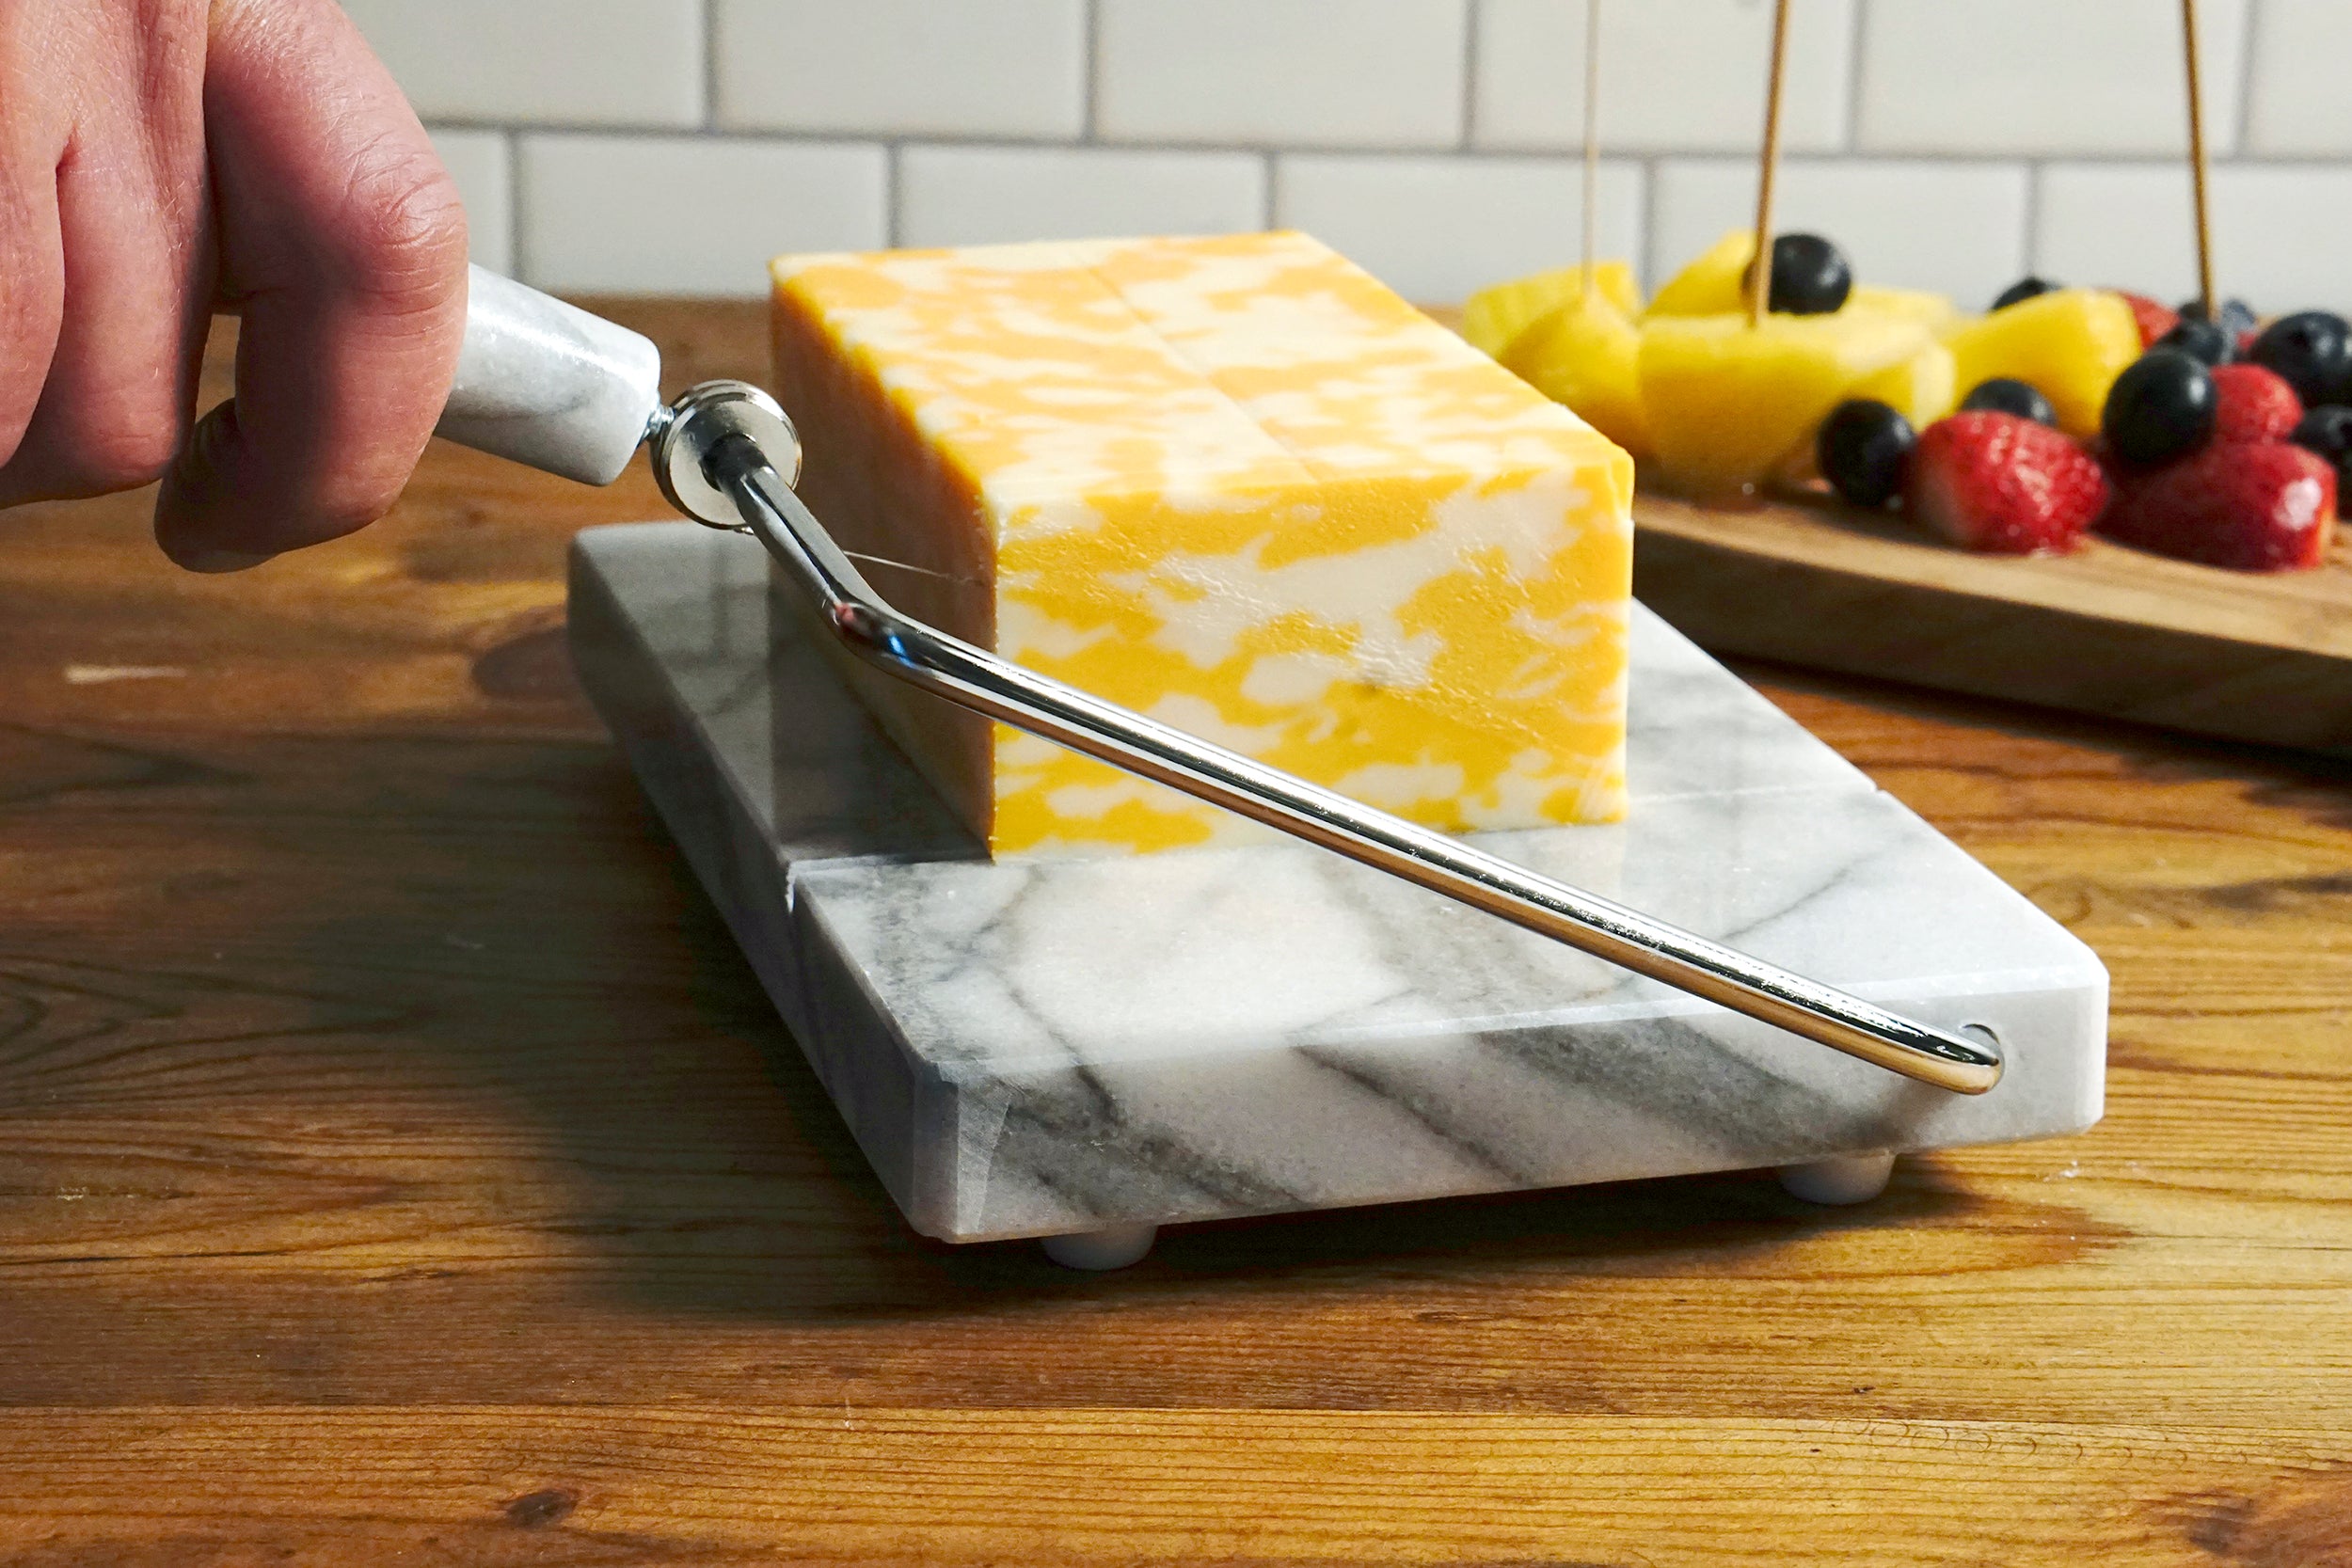 Rsvp Marble Cheese Slicer - White